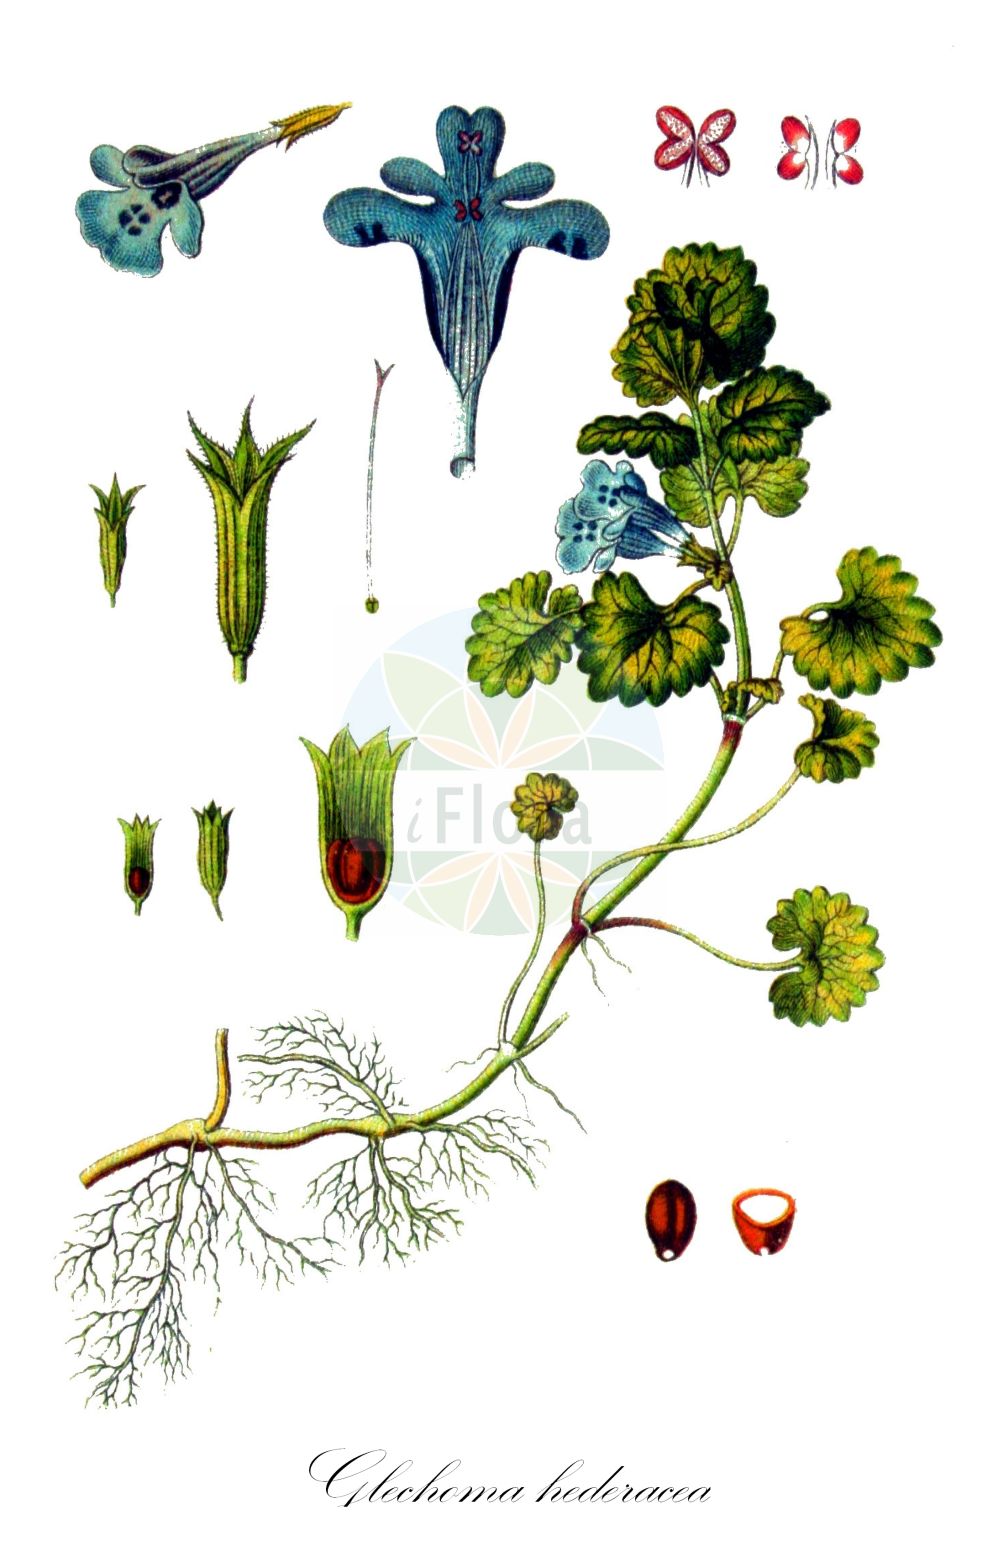 Historische Abbildung von Glechoma hederacea (Echte Gundelrebe - Ground-ivy). Das Bild zeigt Blatt, Bluete, Frucht und Same. ---- Historical Drawing of Glechoma hederacea (Echte Gundelrebe - Ground-ivy). The image is showing leaf, flower, fruit and seed.(Glechoma hederacea,Echte Gundelrebe,Ground-ivy,Calamintha hederacea,Chamaecissos hederaceus,Chamaeclema hederacea,Glechoma borealis,Glechoma bulgarica,Glechoma hederacea,Glechoma heterophylla,Glechoma intermedia,Glechoma lobulata,Glechoma longicaulis,Glechoma magna,Glechoma micrantha,Glechoma repens,Glechoma rigida,Glechoma rotundifolia,Glechoma serbica,Glechonion hederaceum,Hedera terrestris,Nepeta glechoma,Nepeta hederacea,Nepeta rigida,Echte Gundelrebe,Haarige Gundelrebe,Ground-ivy,Creeping Charlie,Gill-over-The-Ground,Glechoma,Gundermann,Ground-ivy,Lamiaceae,Lippenblütengewächse,Nettle family,Blatt,Bluete,Frucht,Same,leaf,flower,fruit,seed,Sturm (1796f))